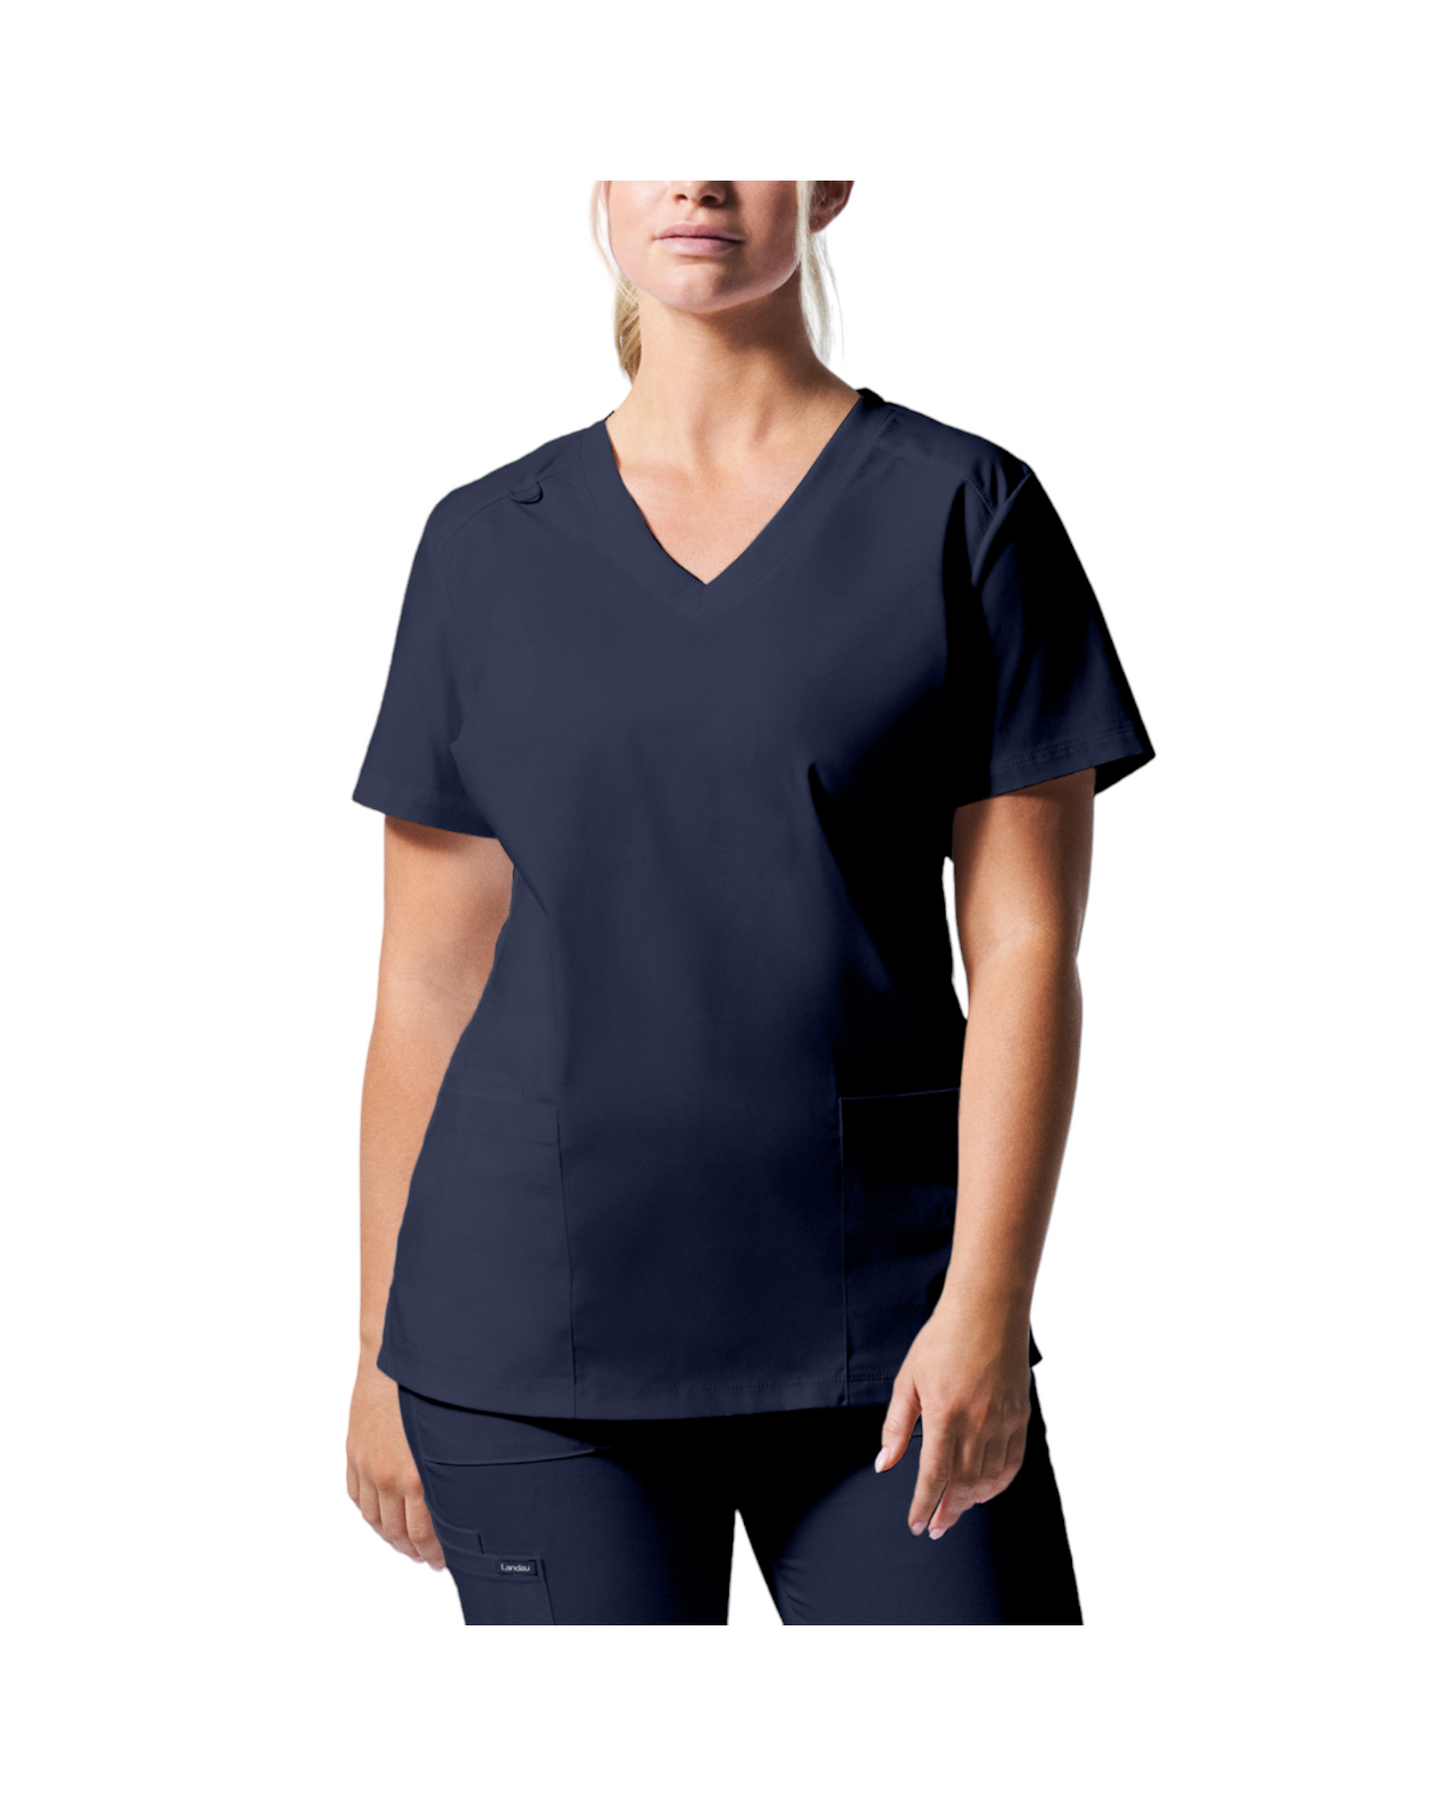 Uniforme de marque landau pour femmes. Travailleuses du domaine de la santé. LT105 couleur Marine, col en V.